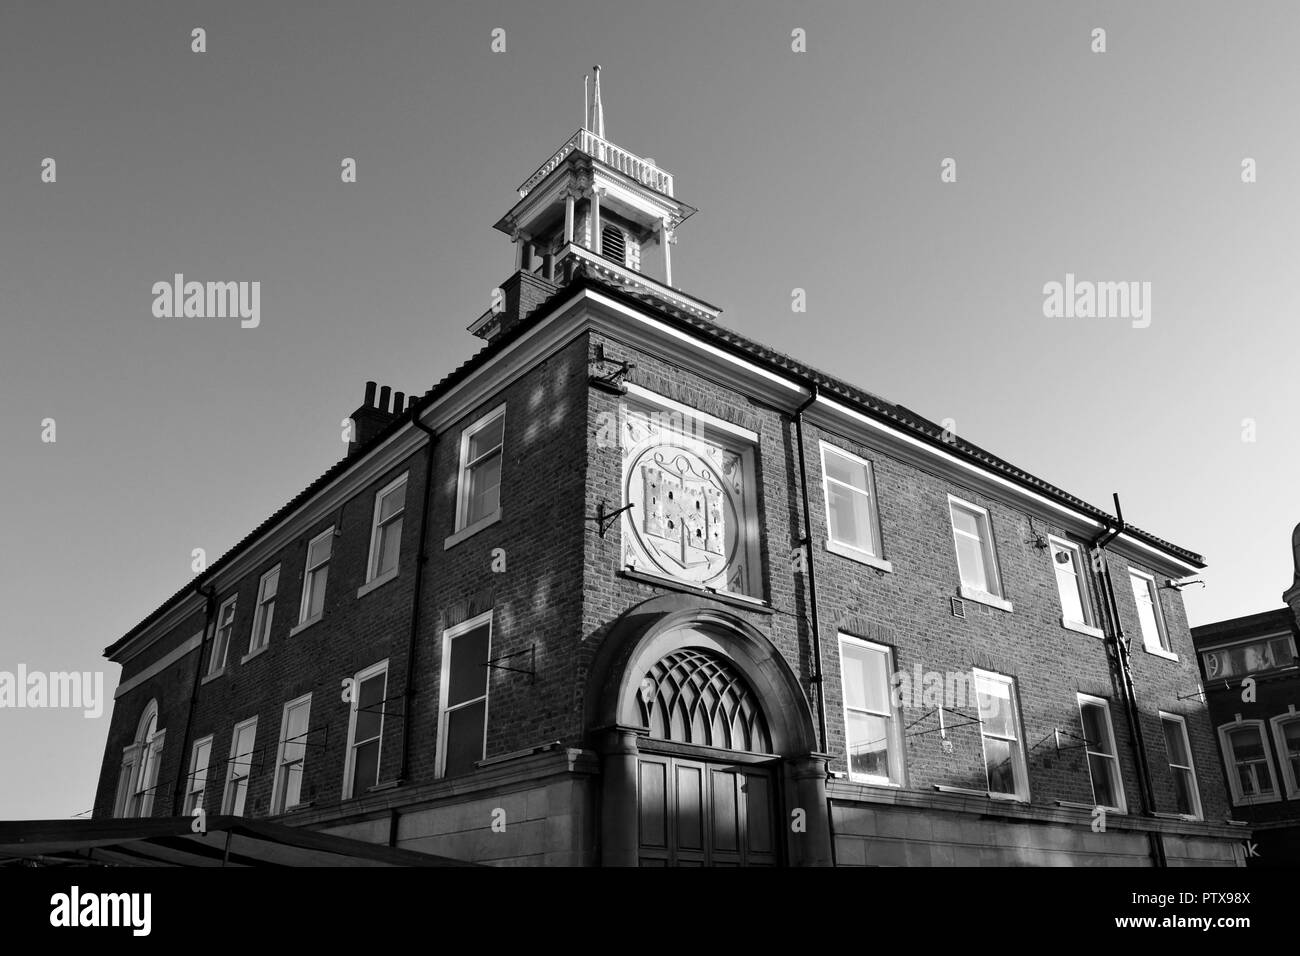 Immagine in bianco e nero dello storico municipio di Stockton, Stockton-on-Tees, Regno Unito, scattata in una mattinata autunnale soleggiata con un cielo limpido. Foto Stock